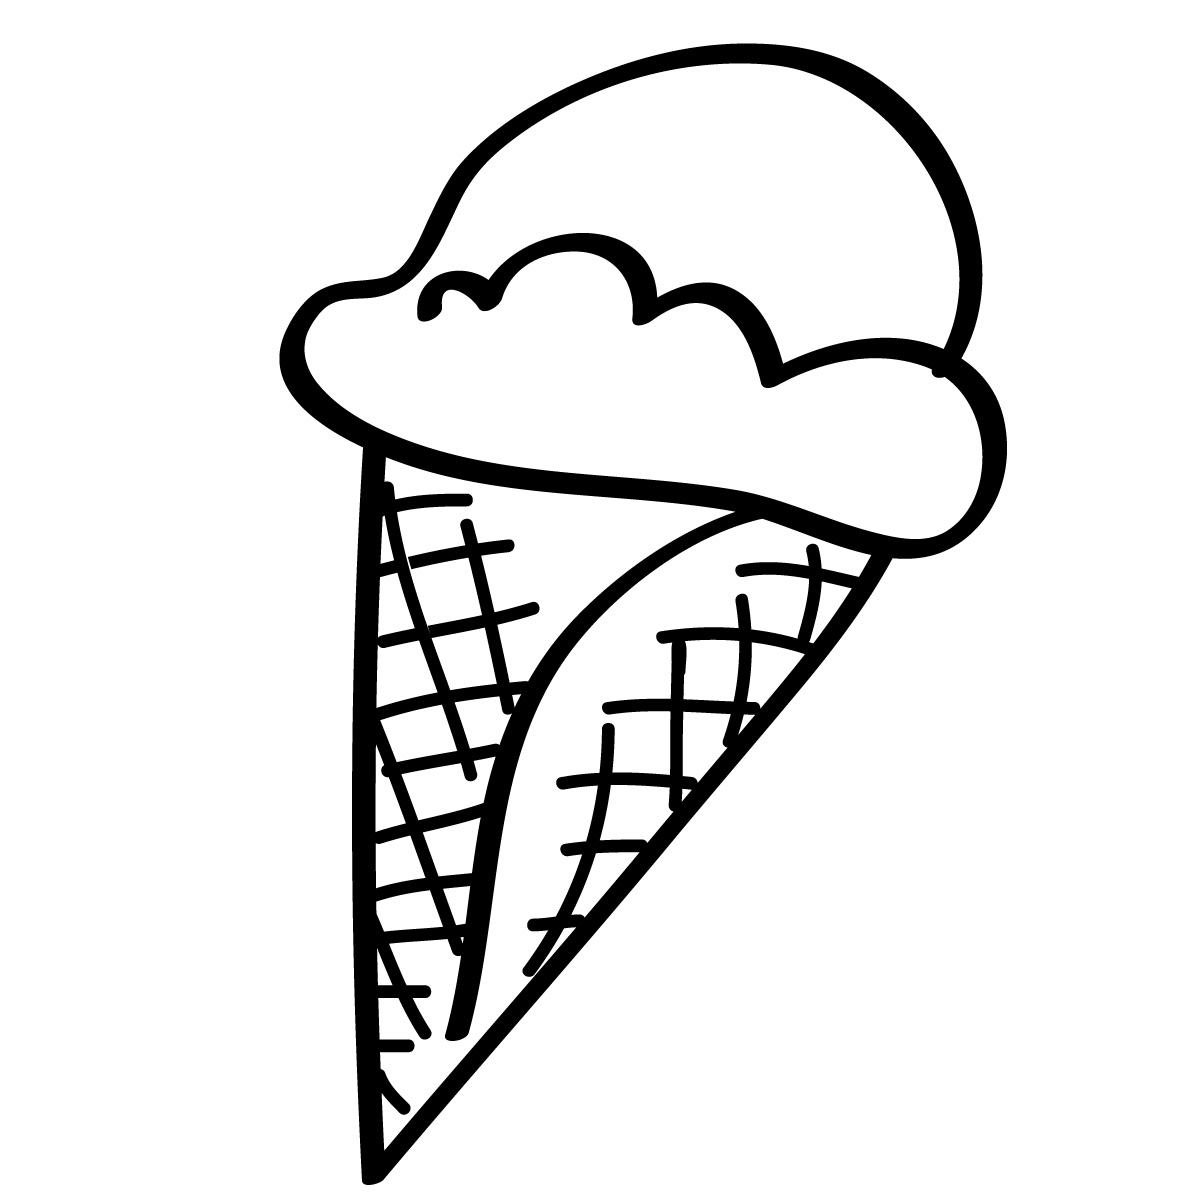 Ice cream cone clipart black and white